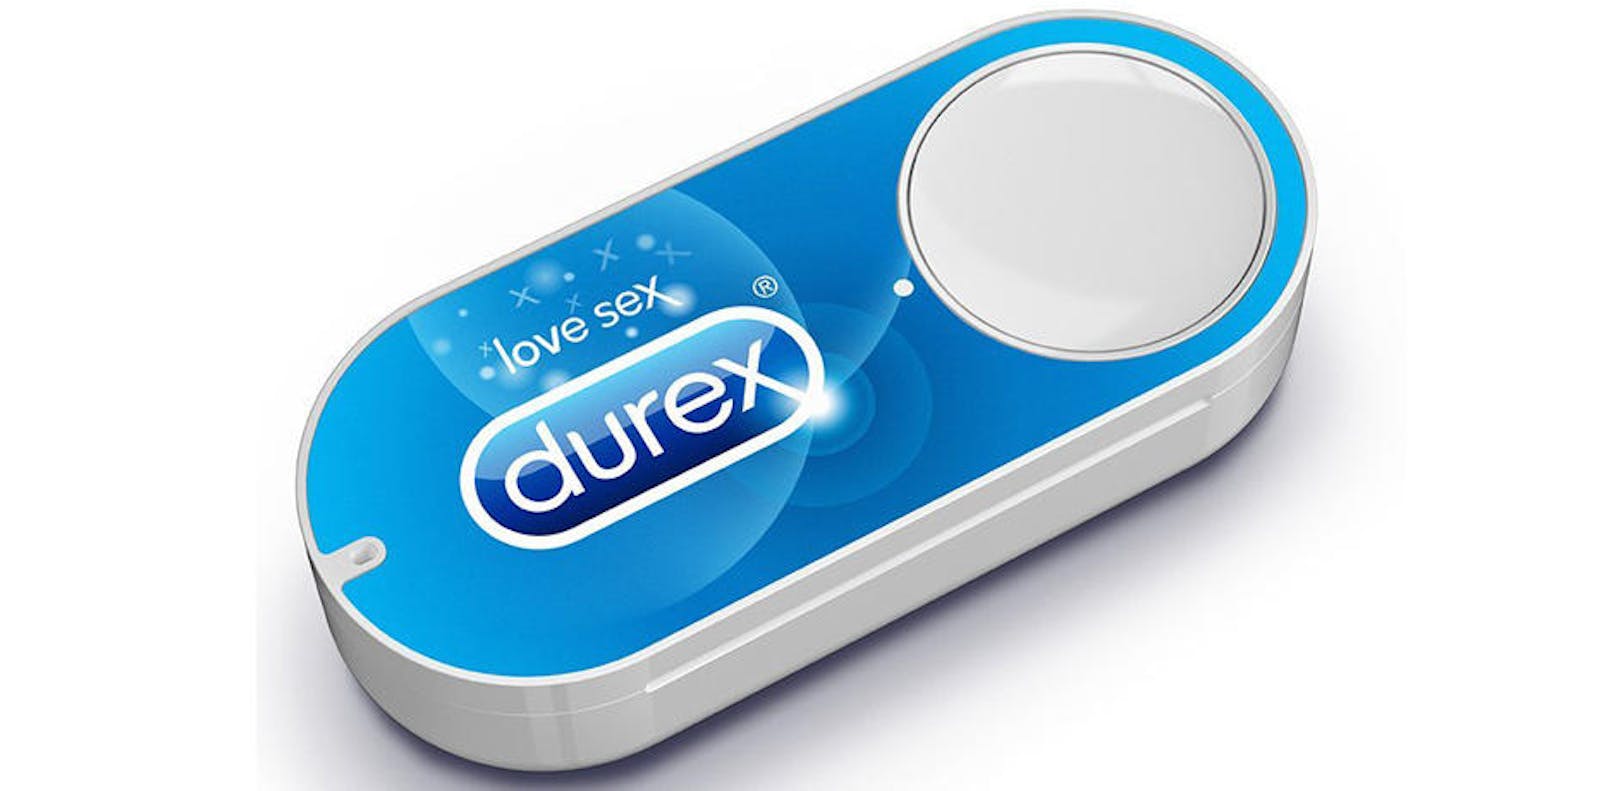 Die Verhütungsmittel der Marke Durex rangieren auf Platz 8 der Dash-Bestellungen.